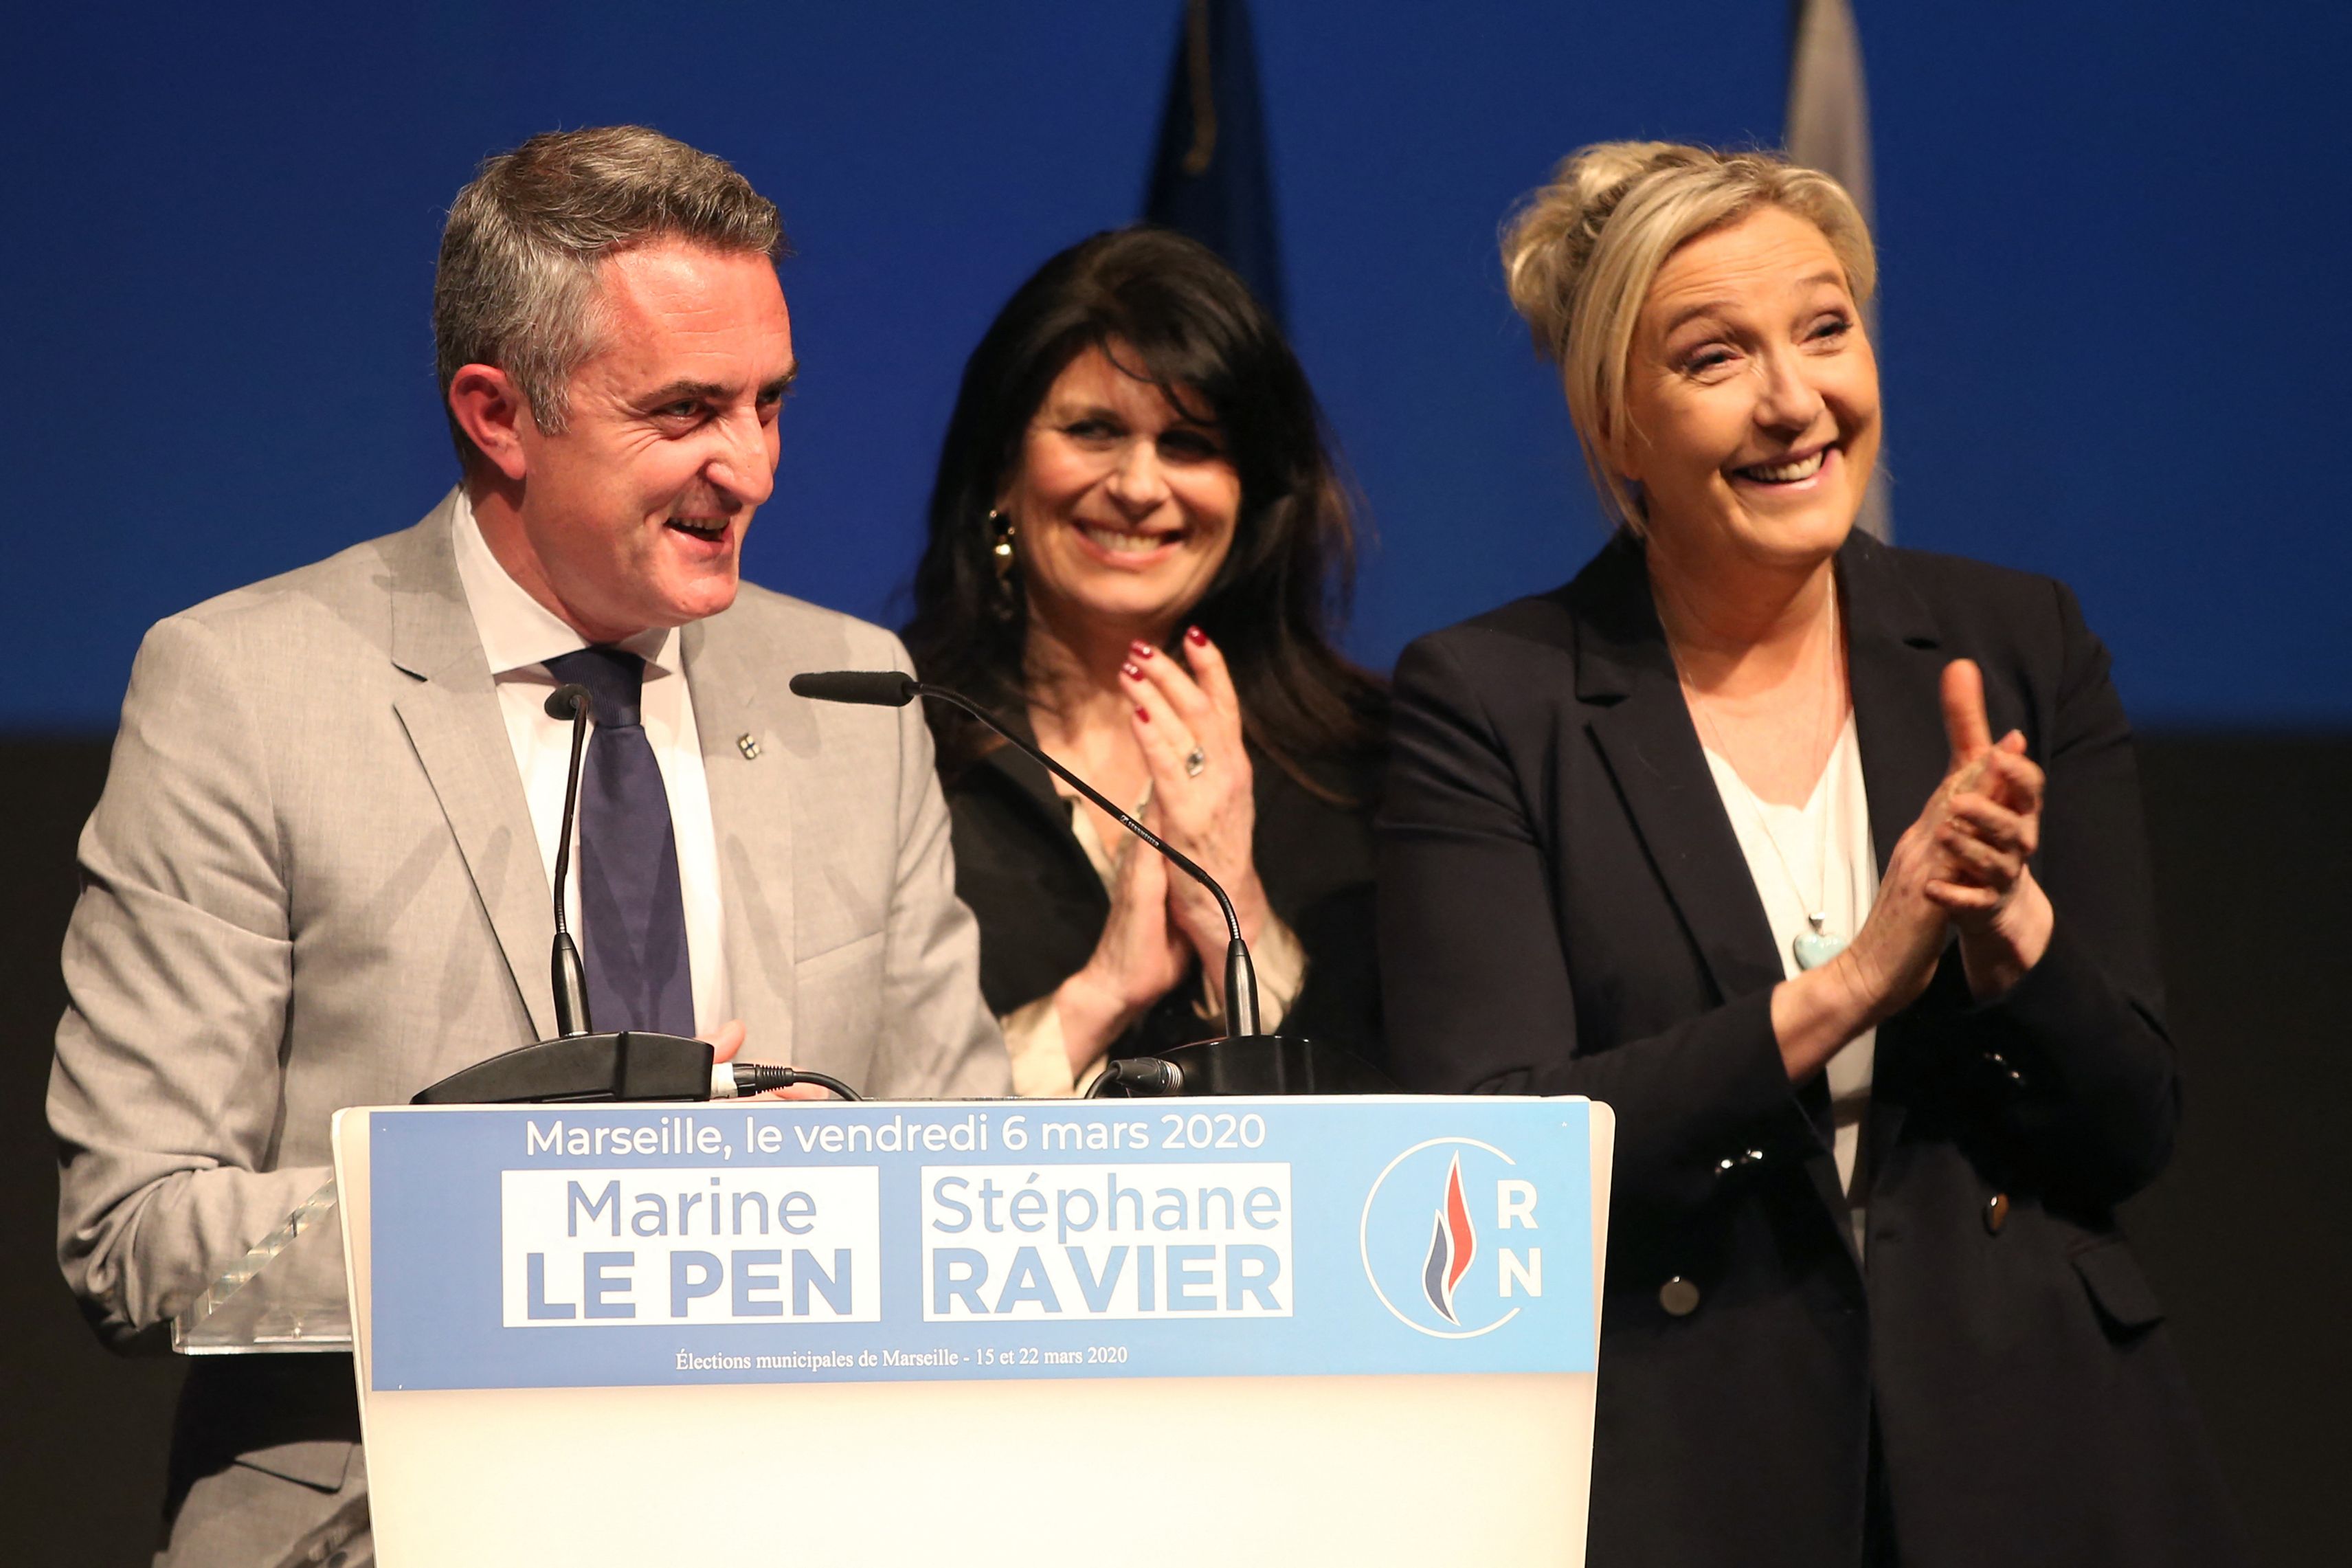 Stéphane Ravier et Marine Le Pen photographiés en mars 2020 à Marseille, à l'occasion de la campagne...